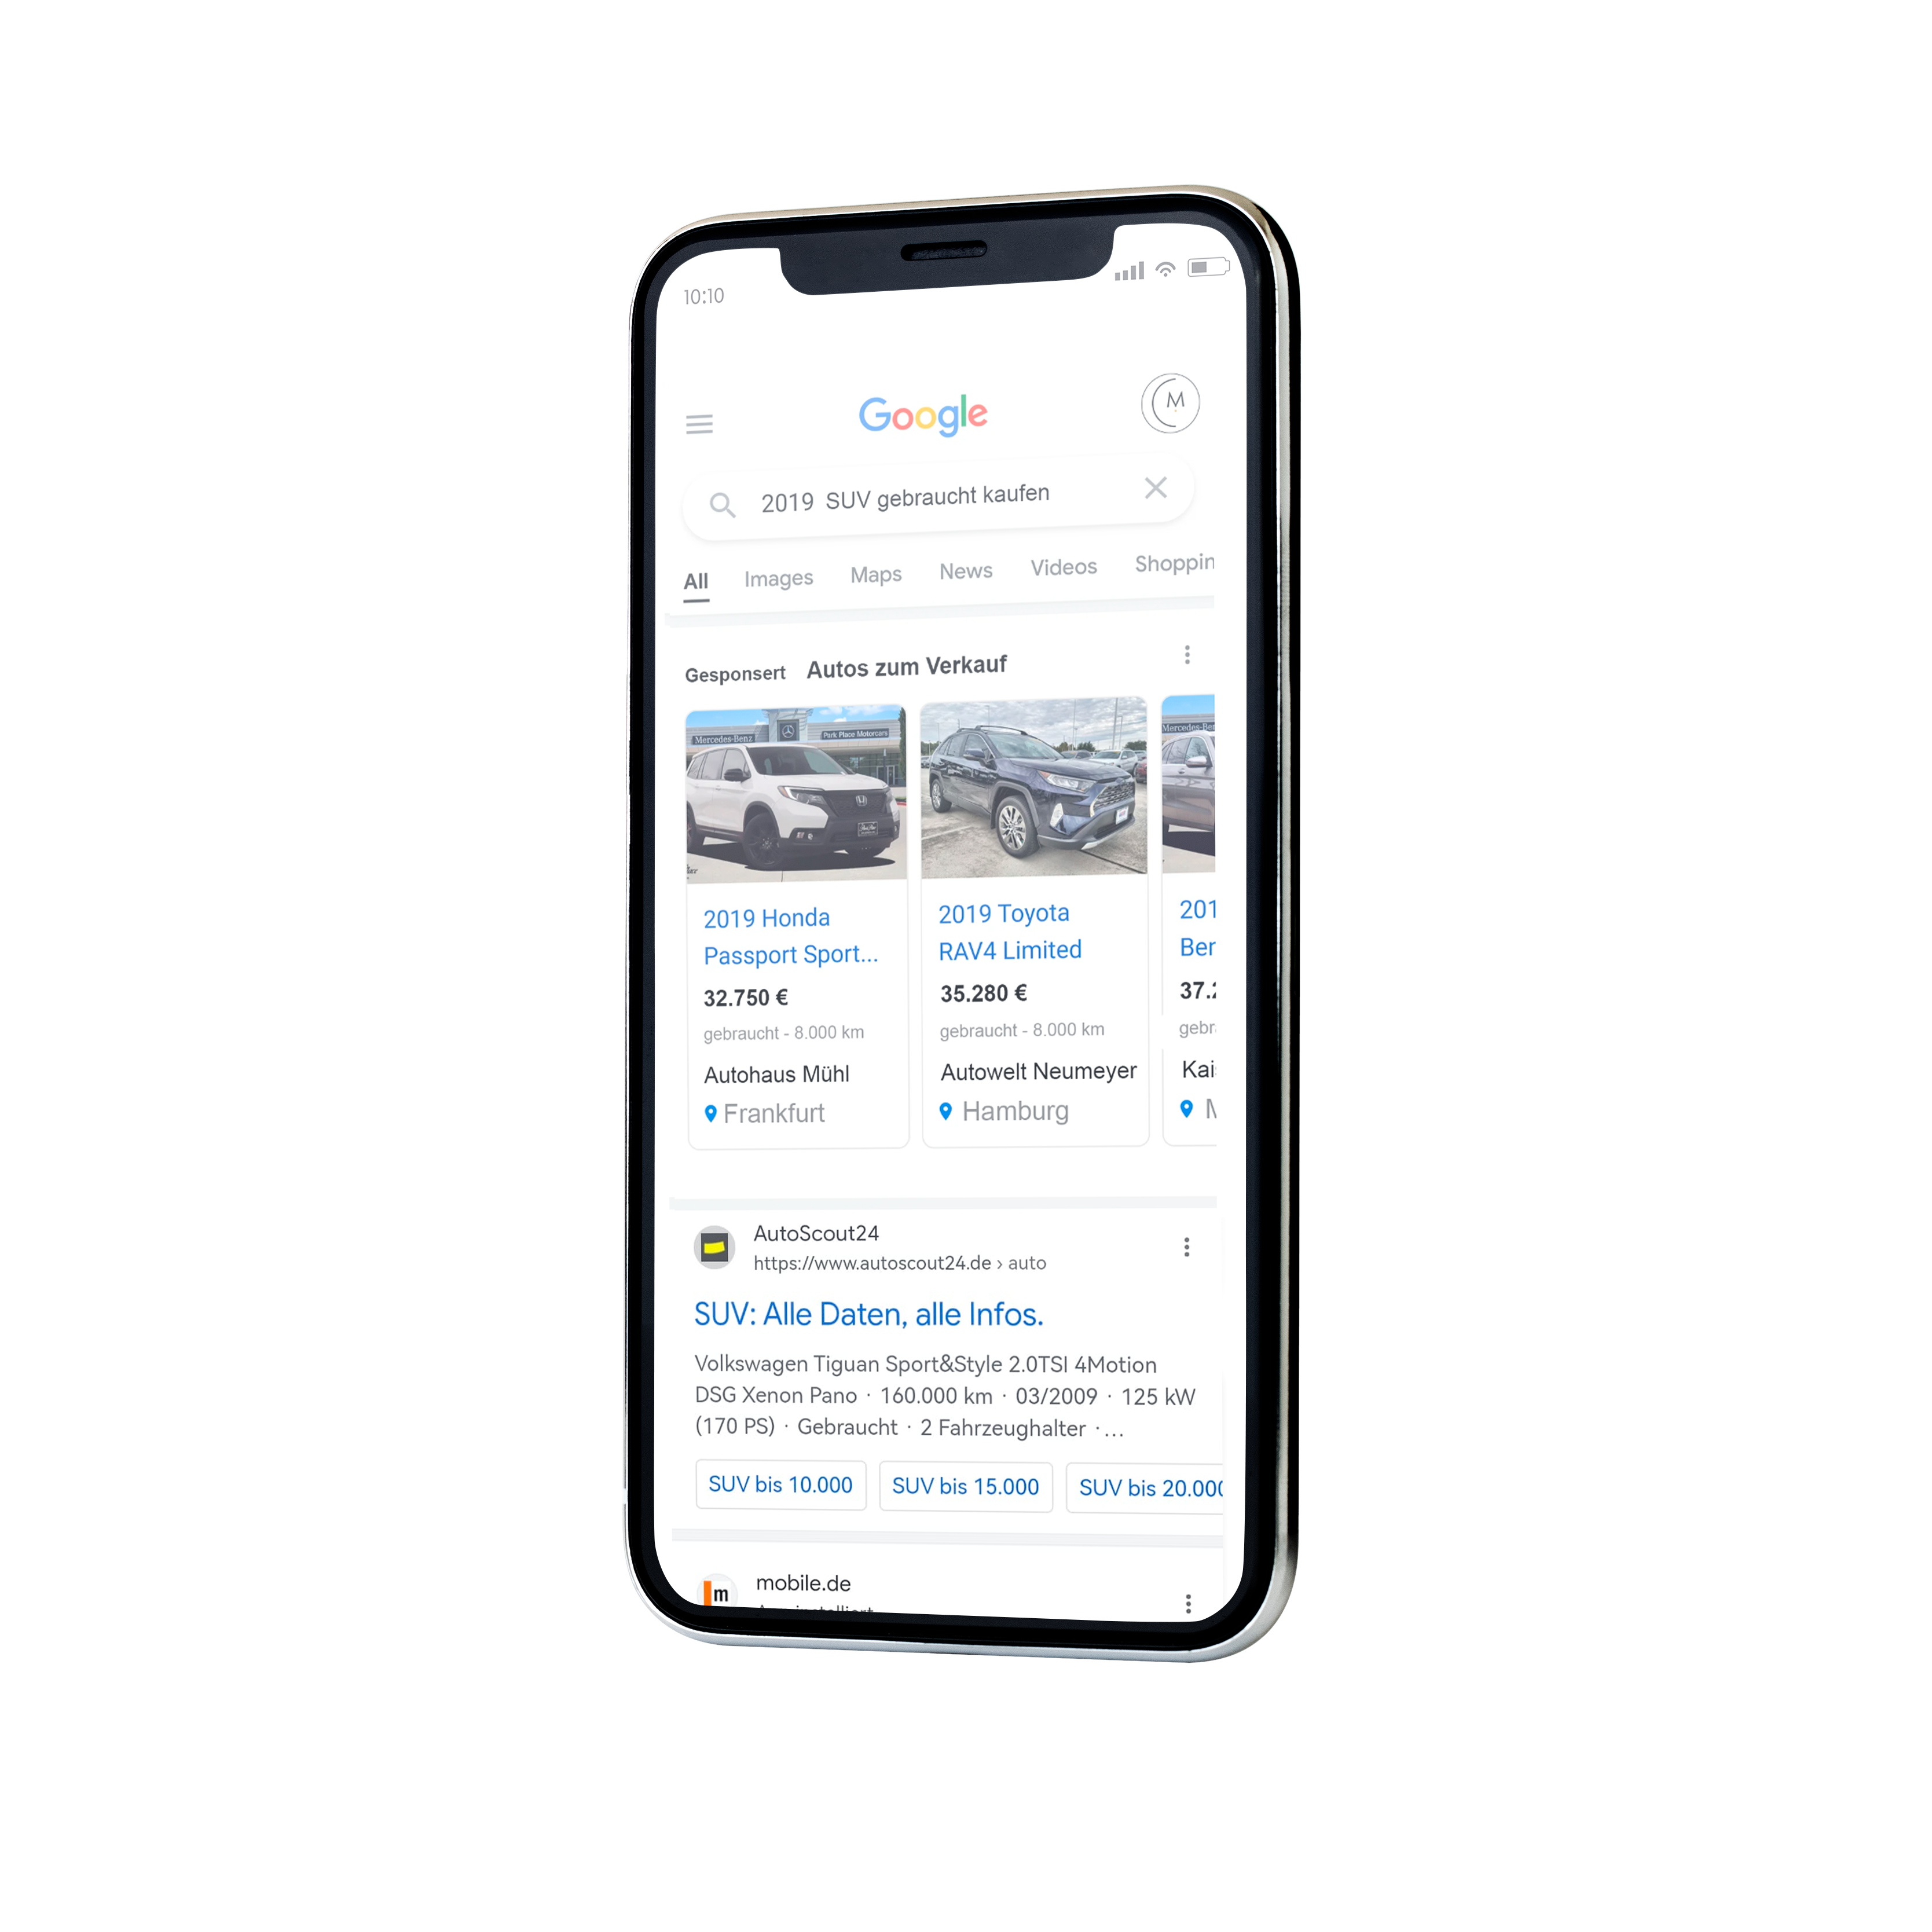 Google Vehicle Ads - Autoonlinebörse alternative zu mobile.de und autoscout24.de